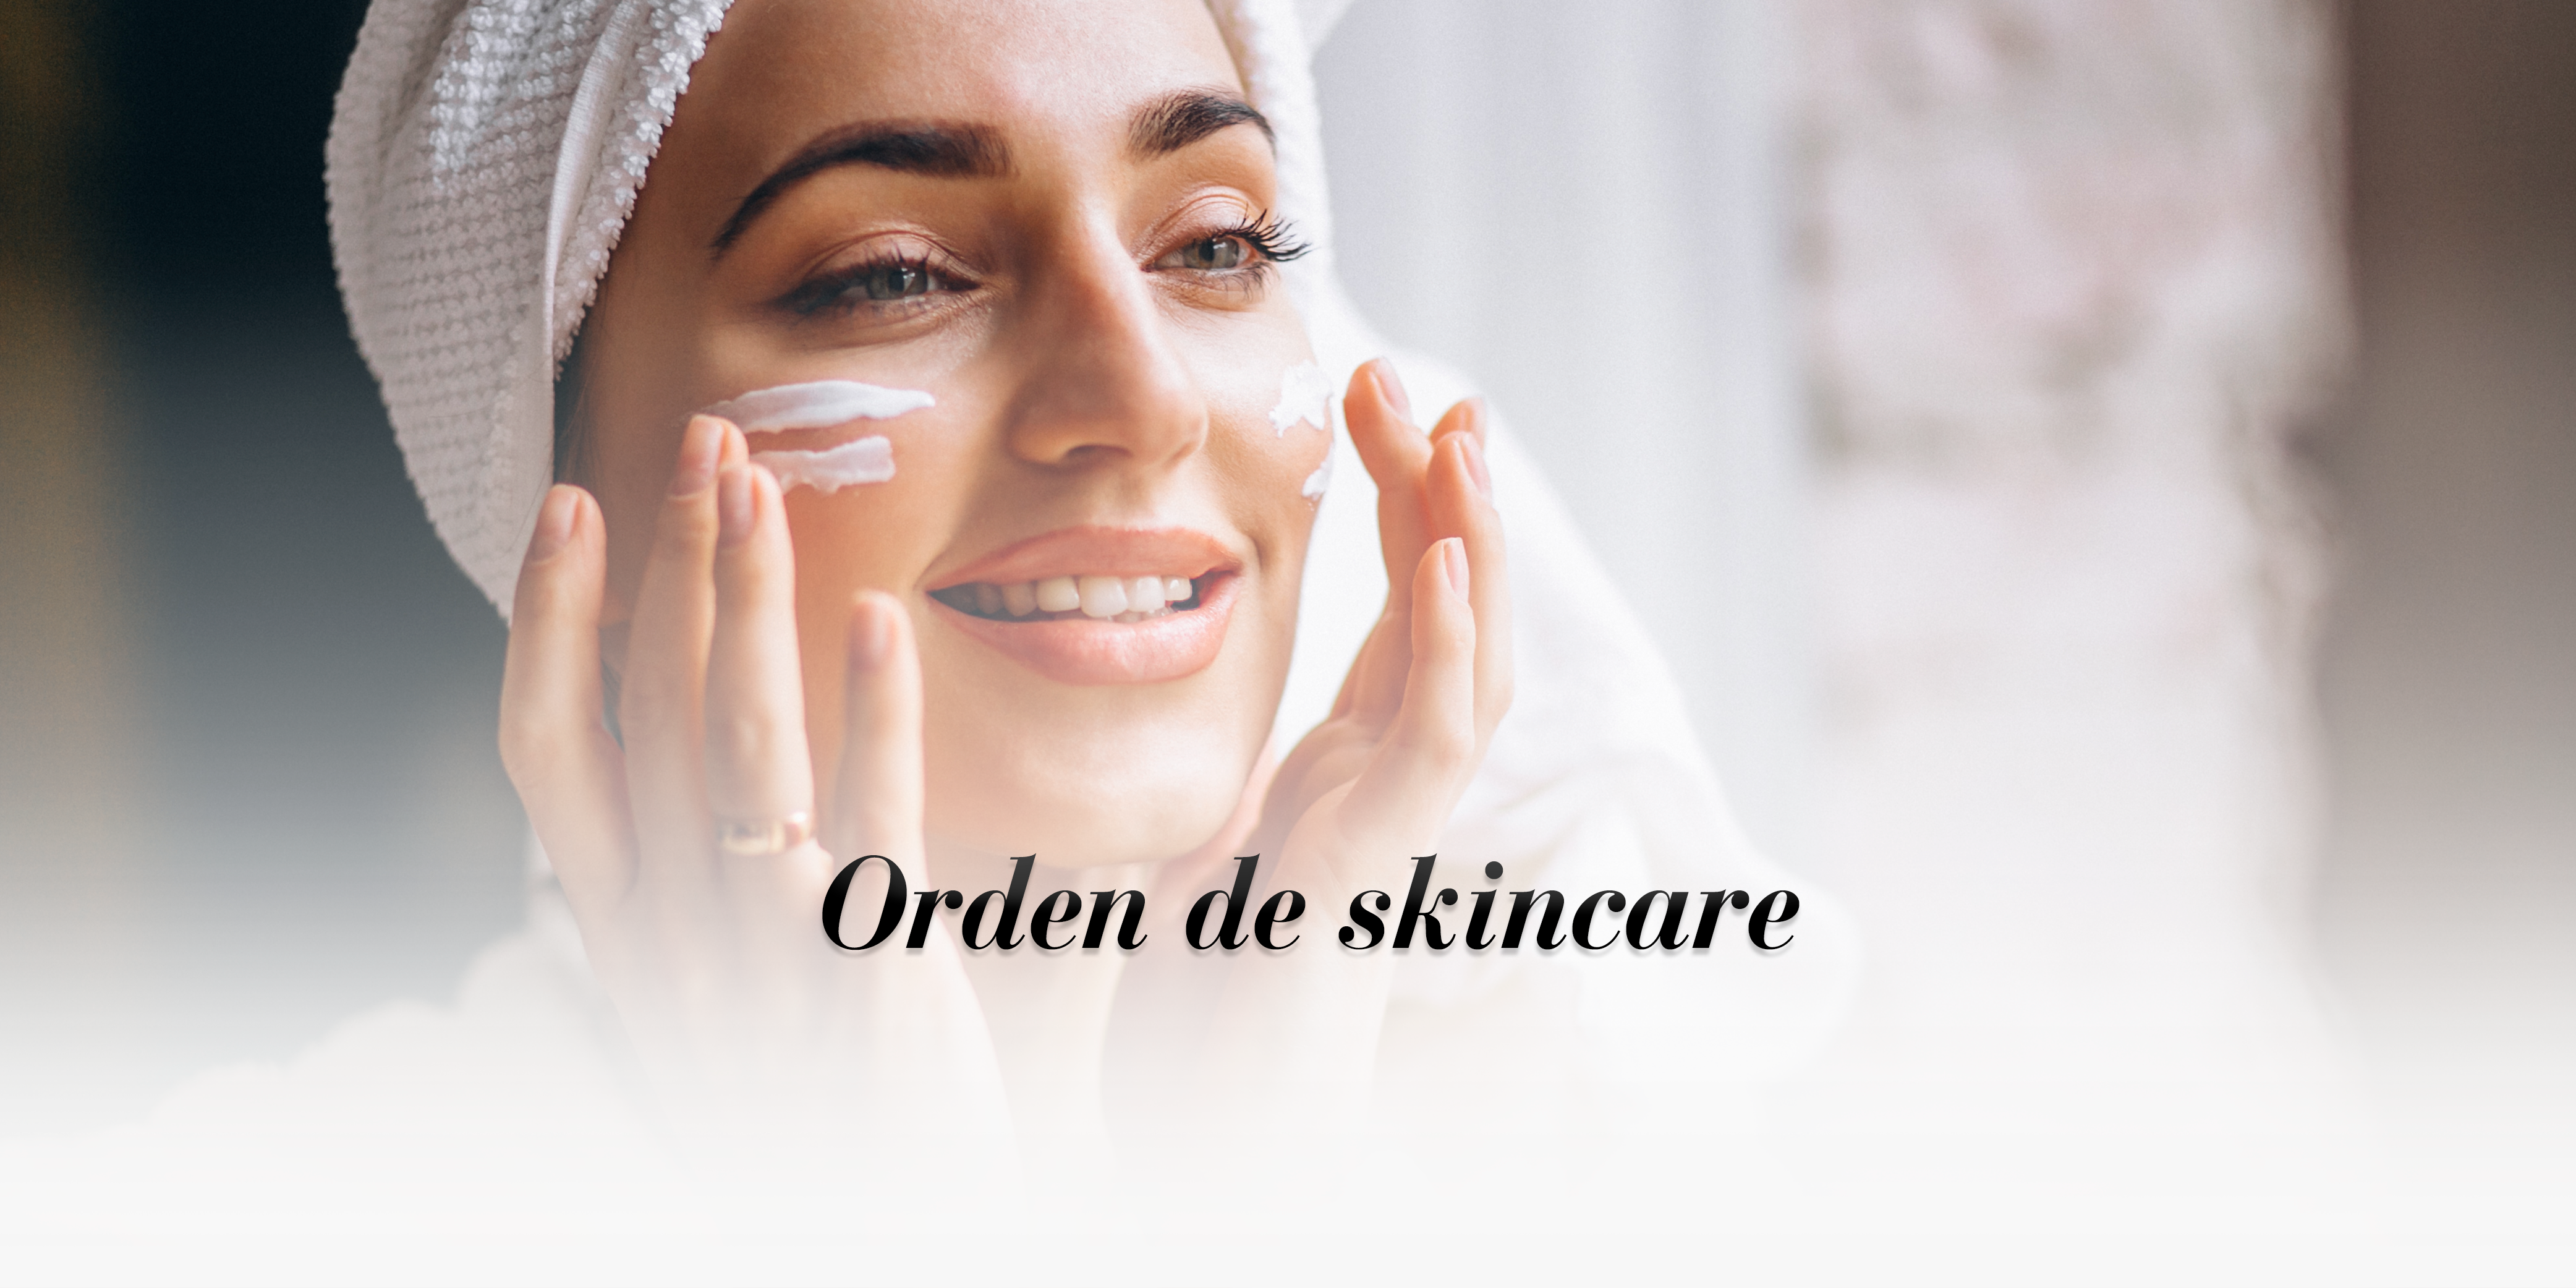 ¿Cómo cuidar la piel de la cara? Tips en tu orden de skincare